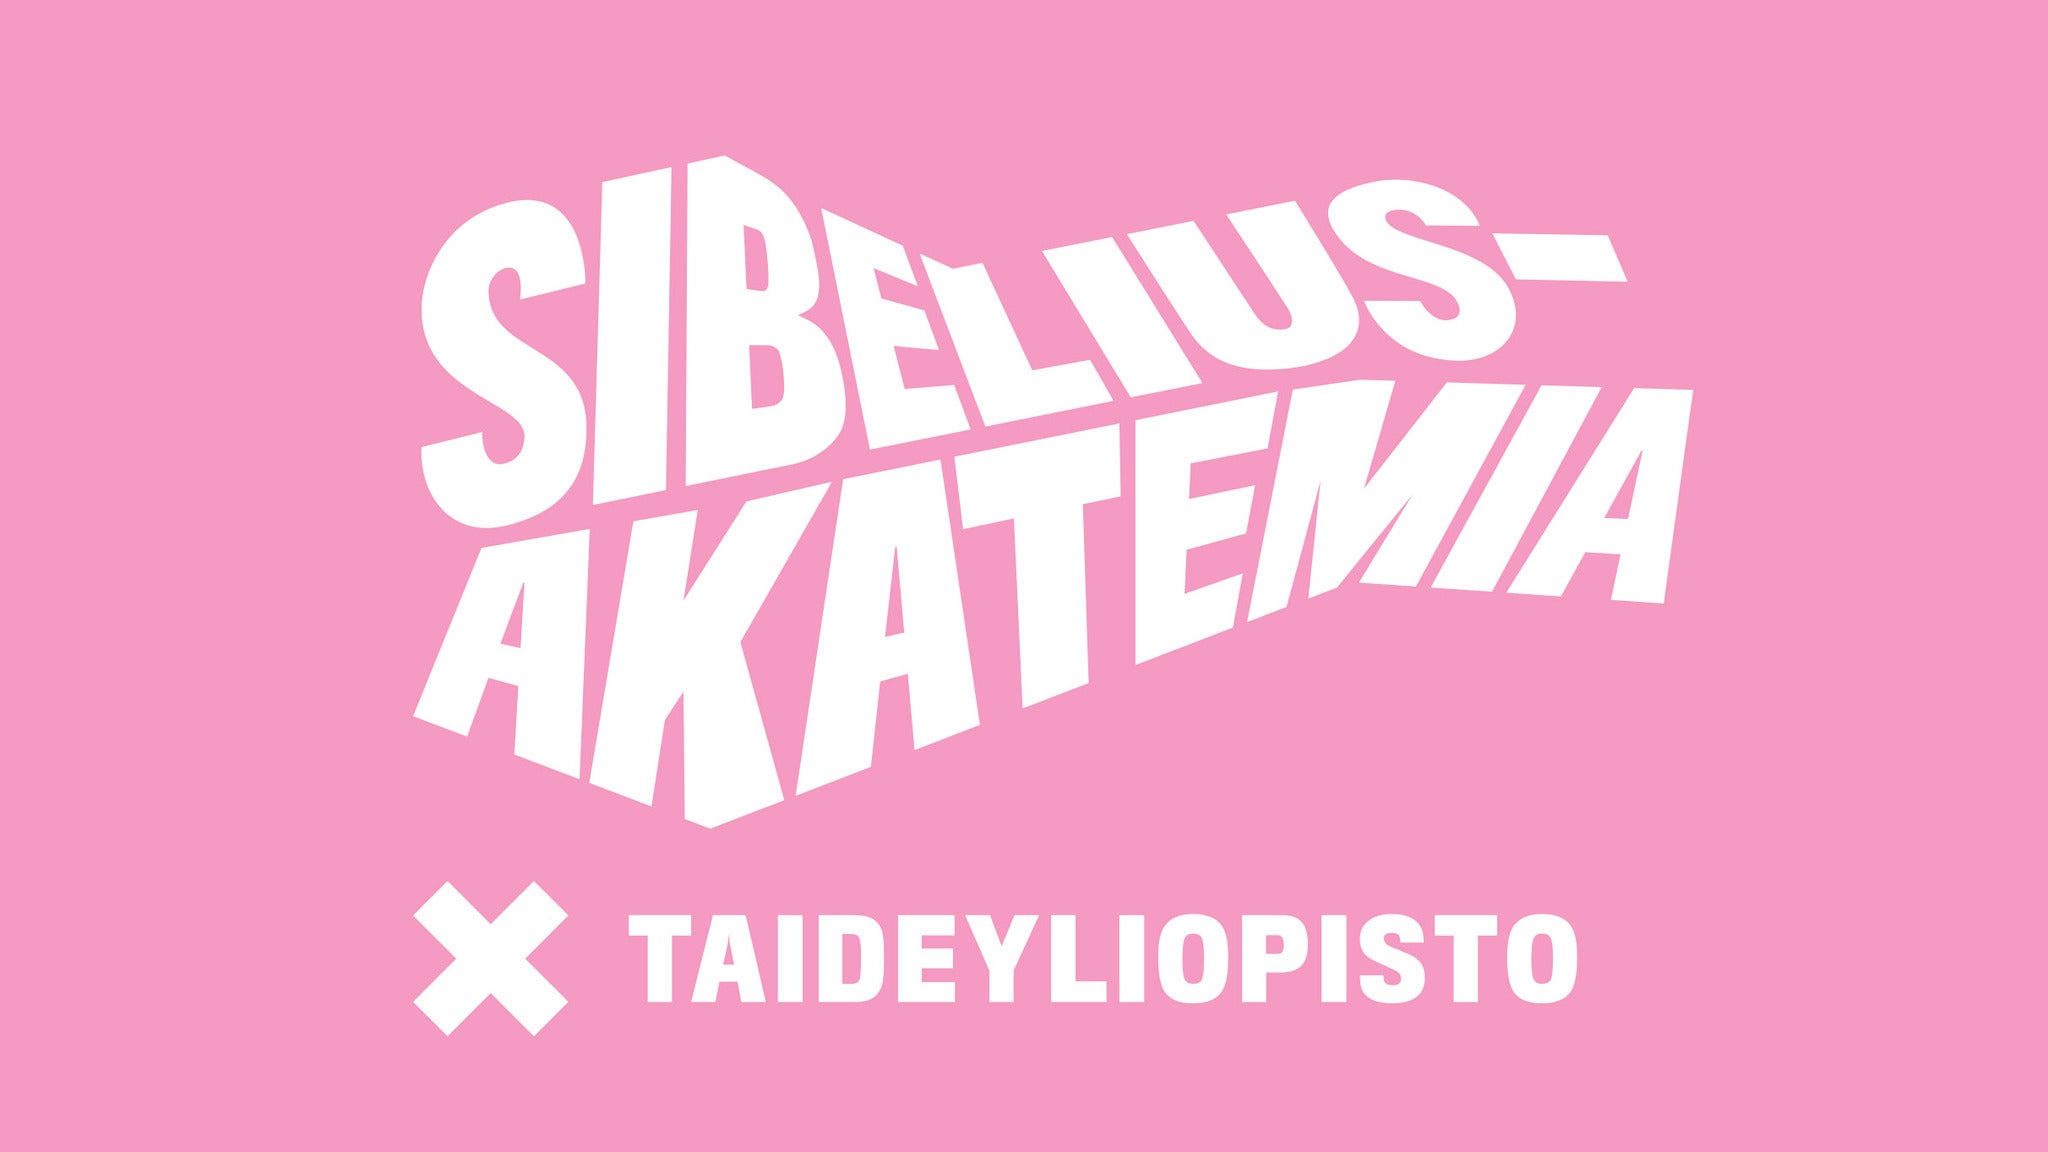 Sibafest: Paripeli - suomalaista kamarimusiikkia sellolle ja pianolle